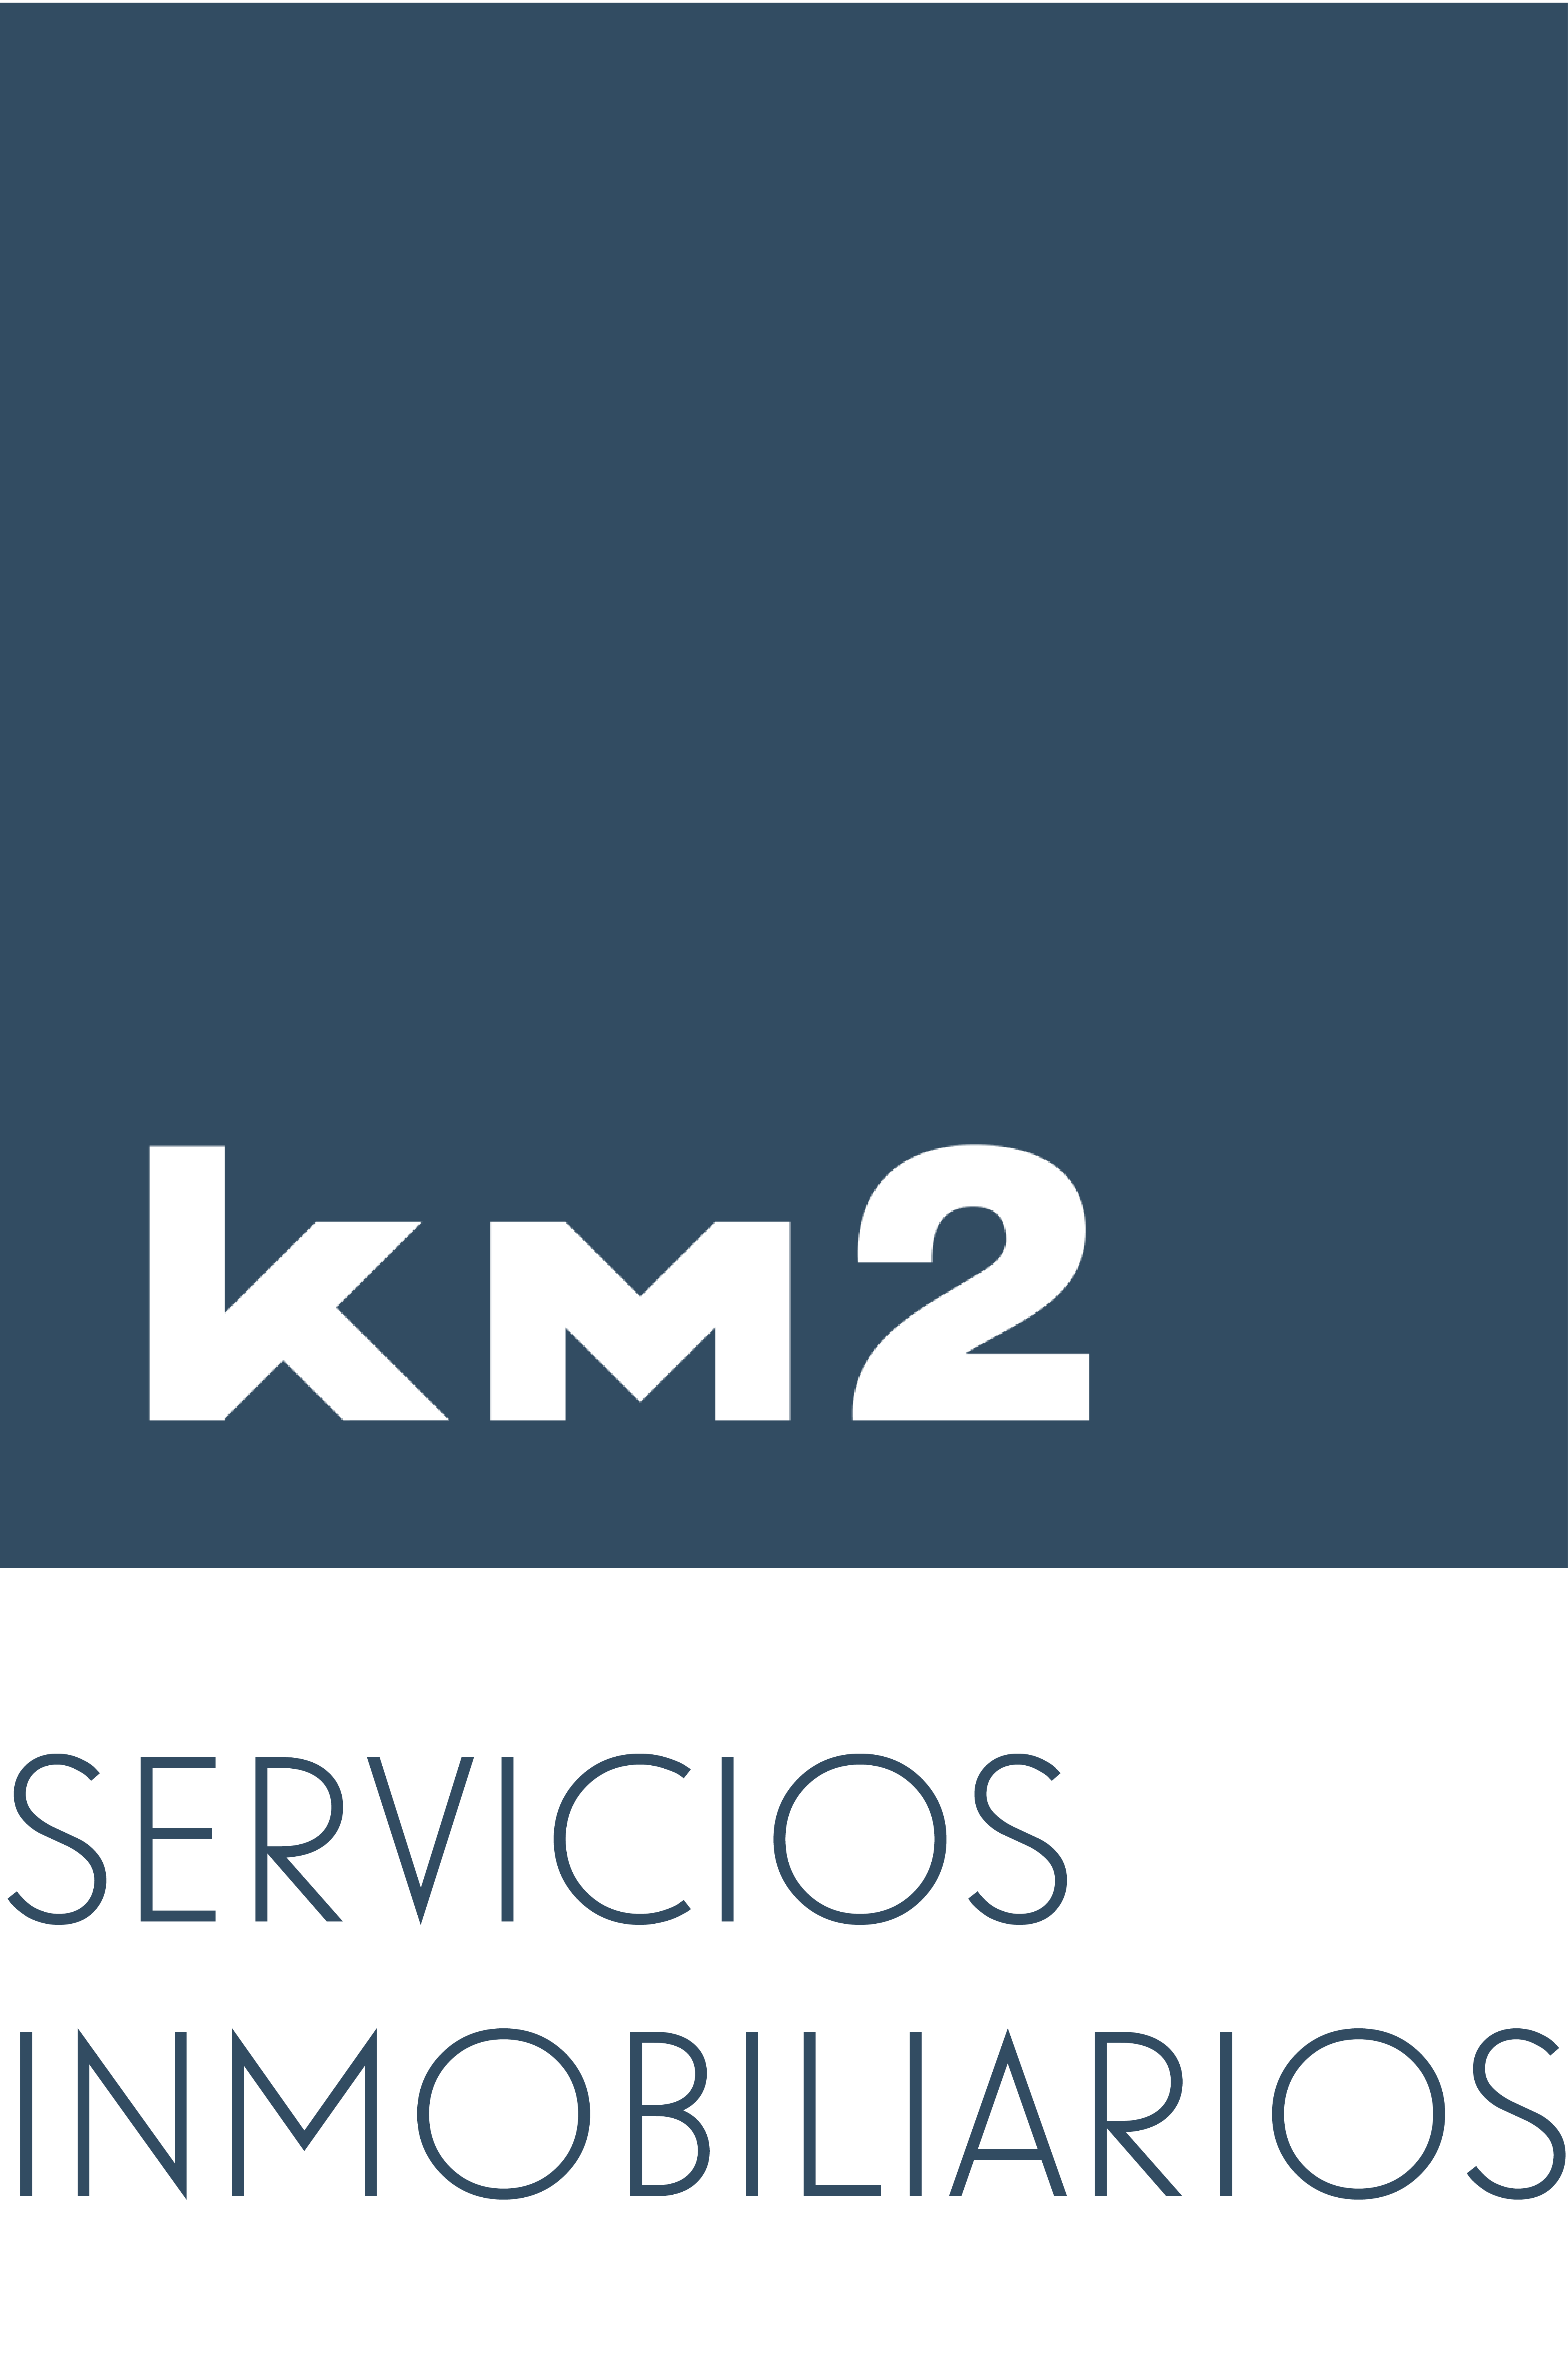 Km2 - Servicios Inmobiliarios